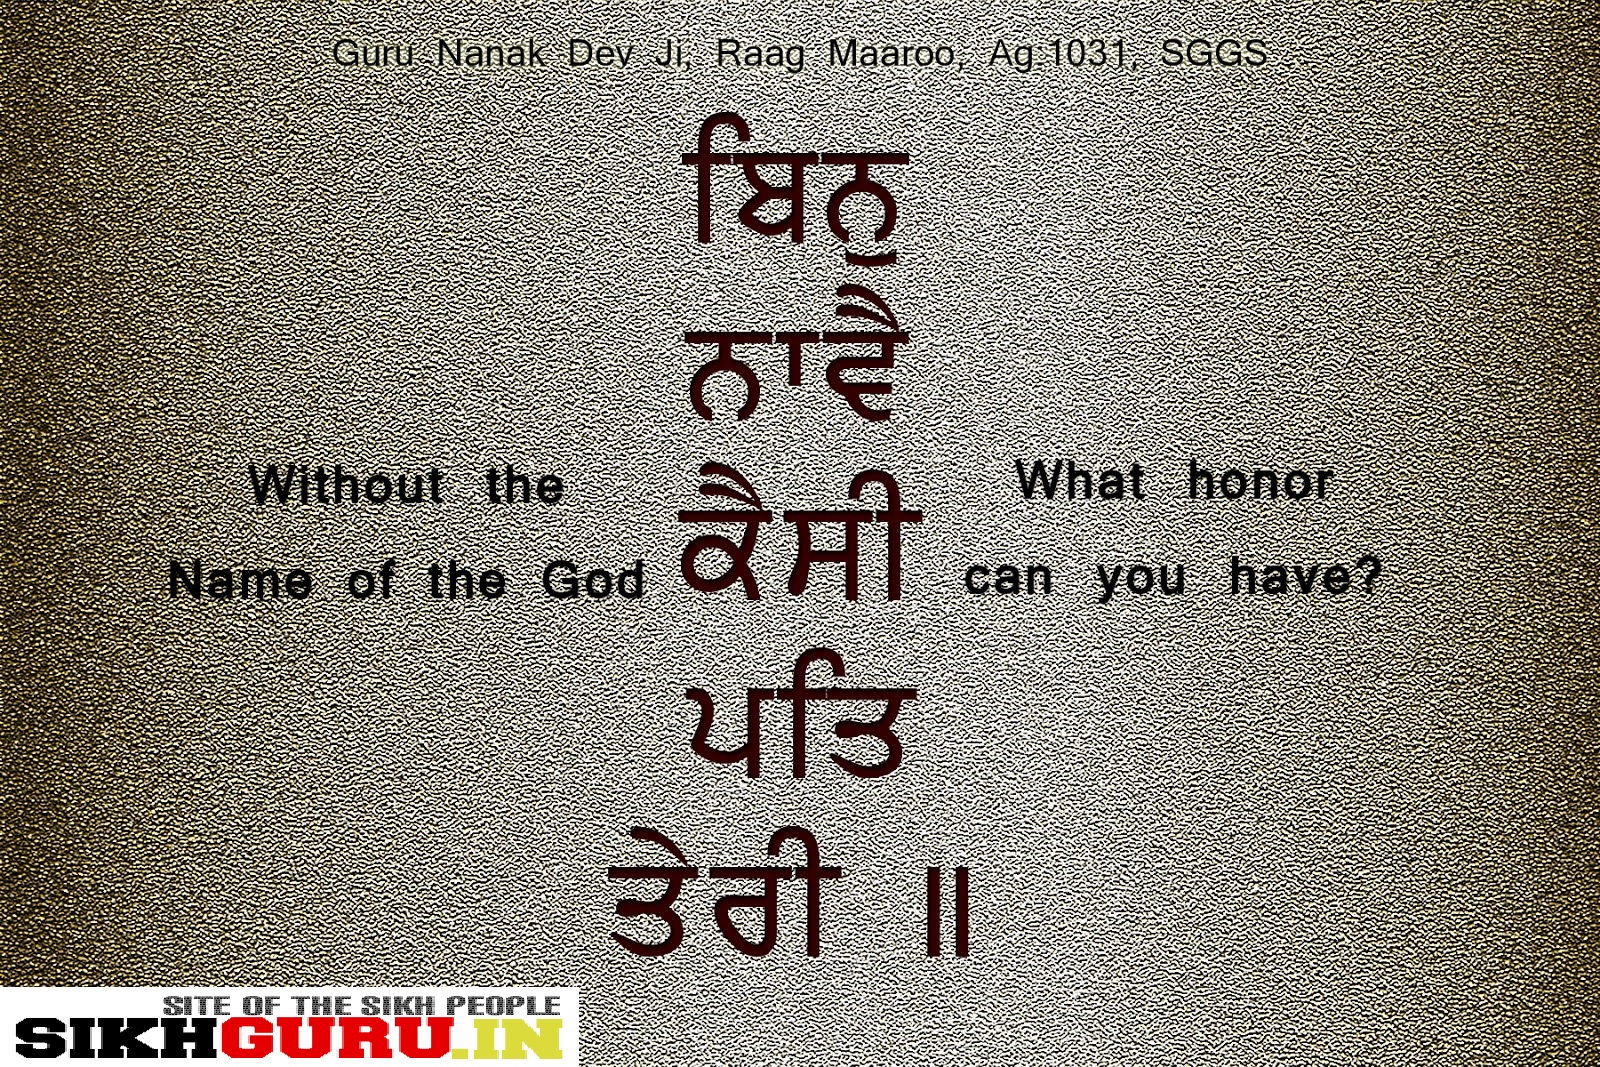 Guru Granth Sahib Quotes In English. QuotesGram